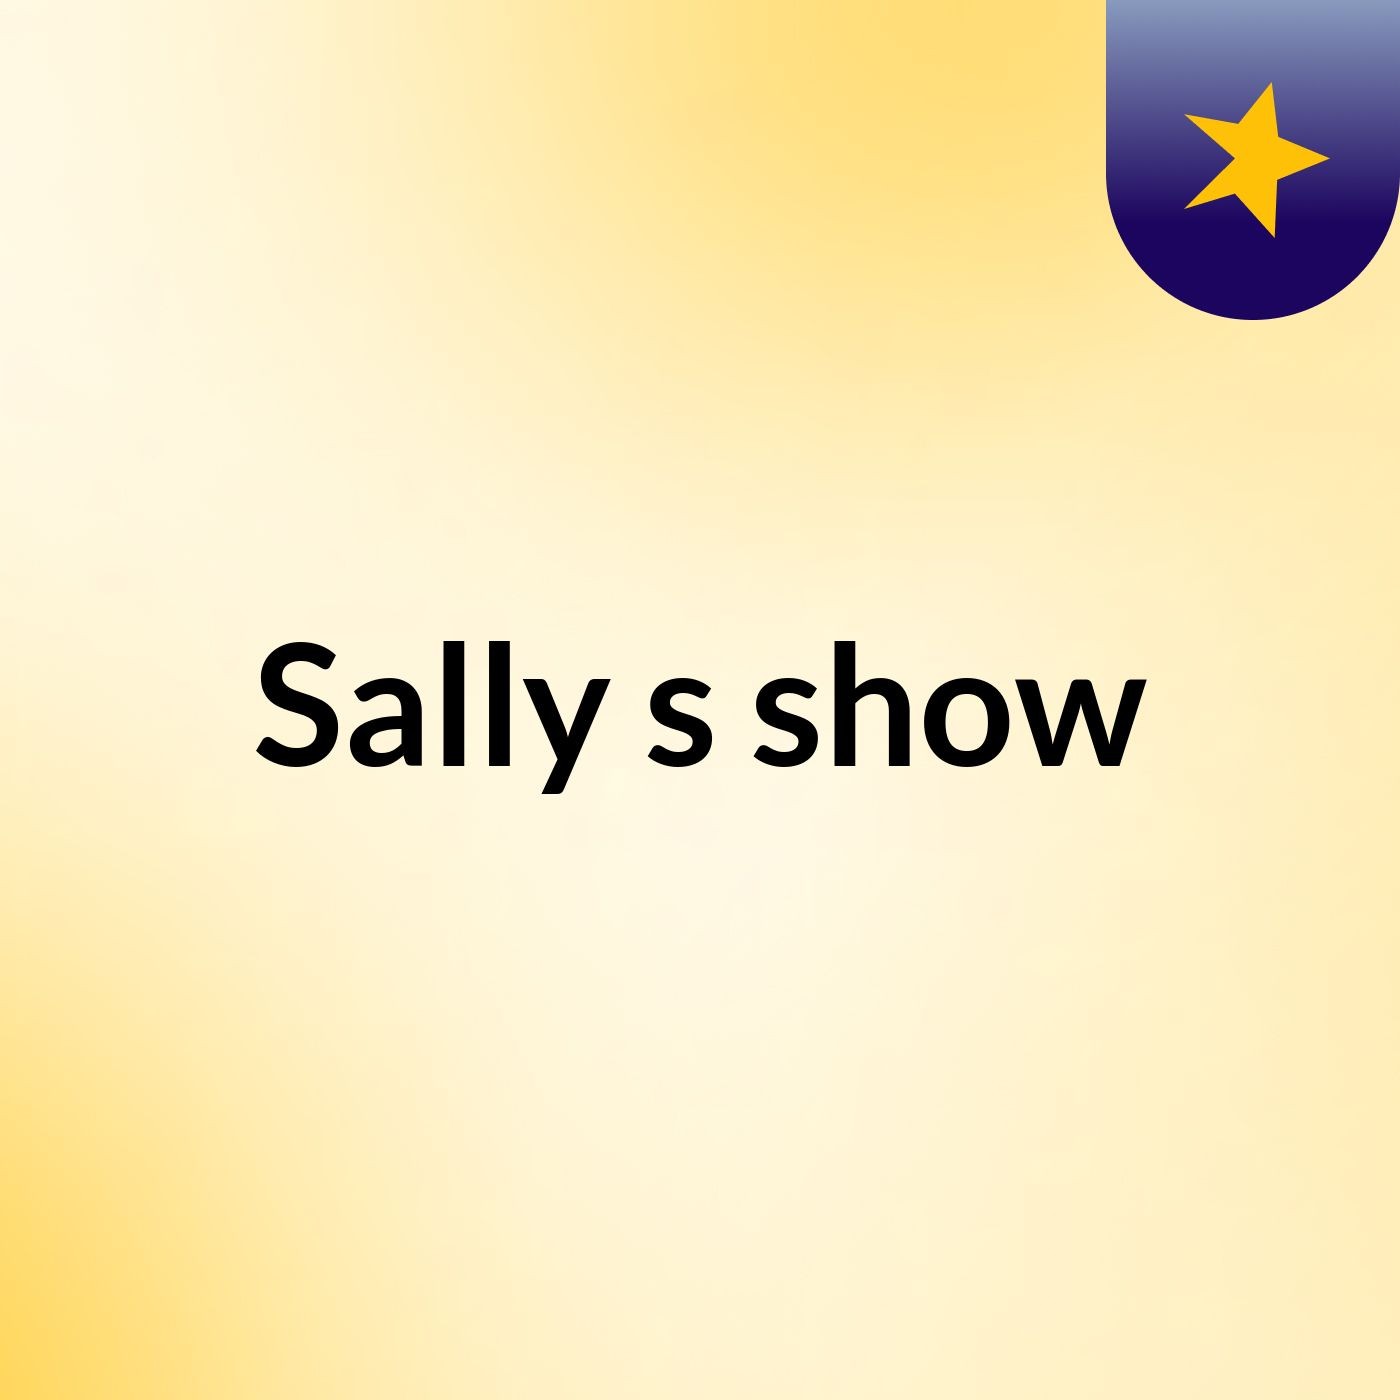 Sally's show